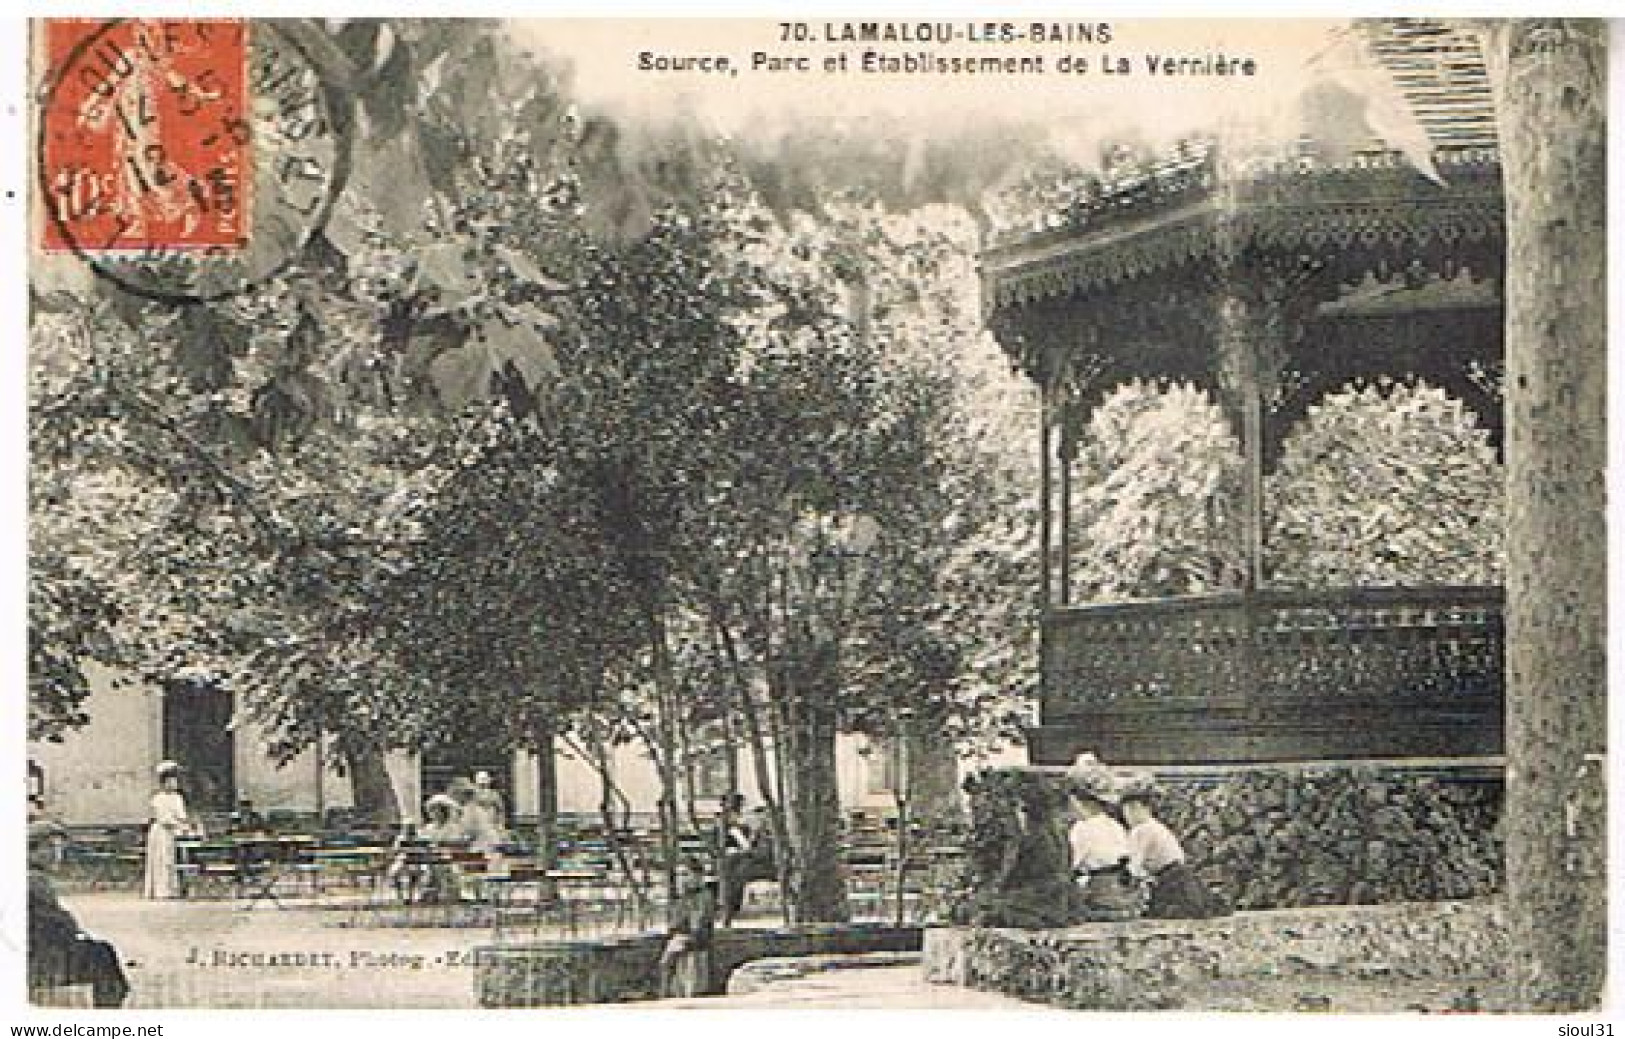 34 E  LAMALOU LES BAINS  SOURCE PARC ET ETABLISSEMENT DE LA VERRIERE  1913 - Lamalou Les Bains